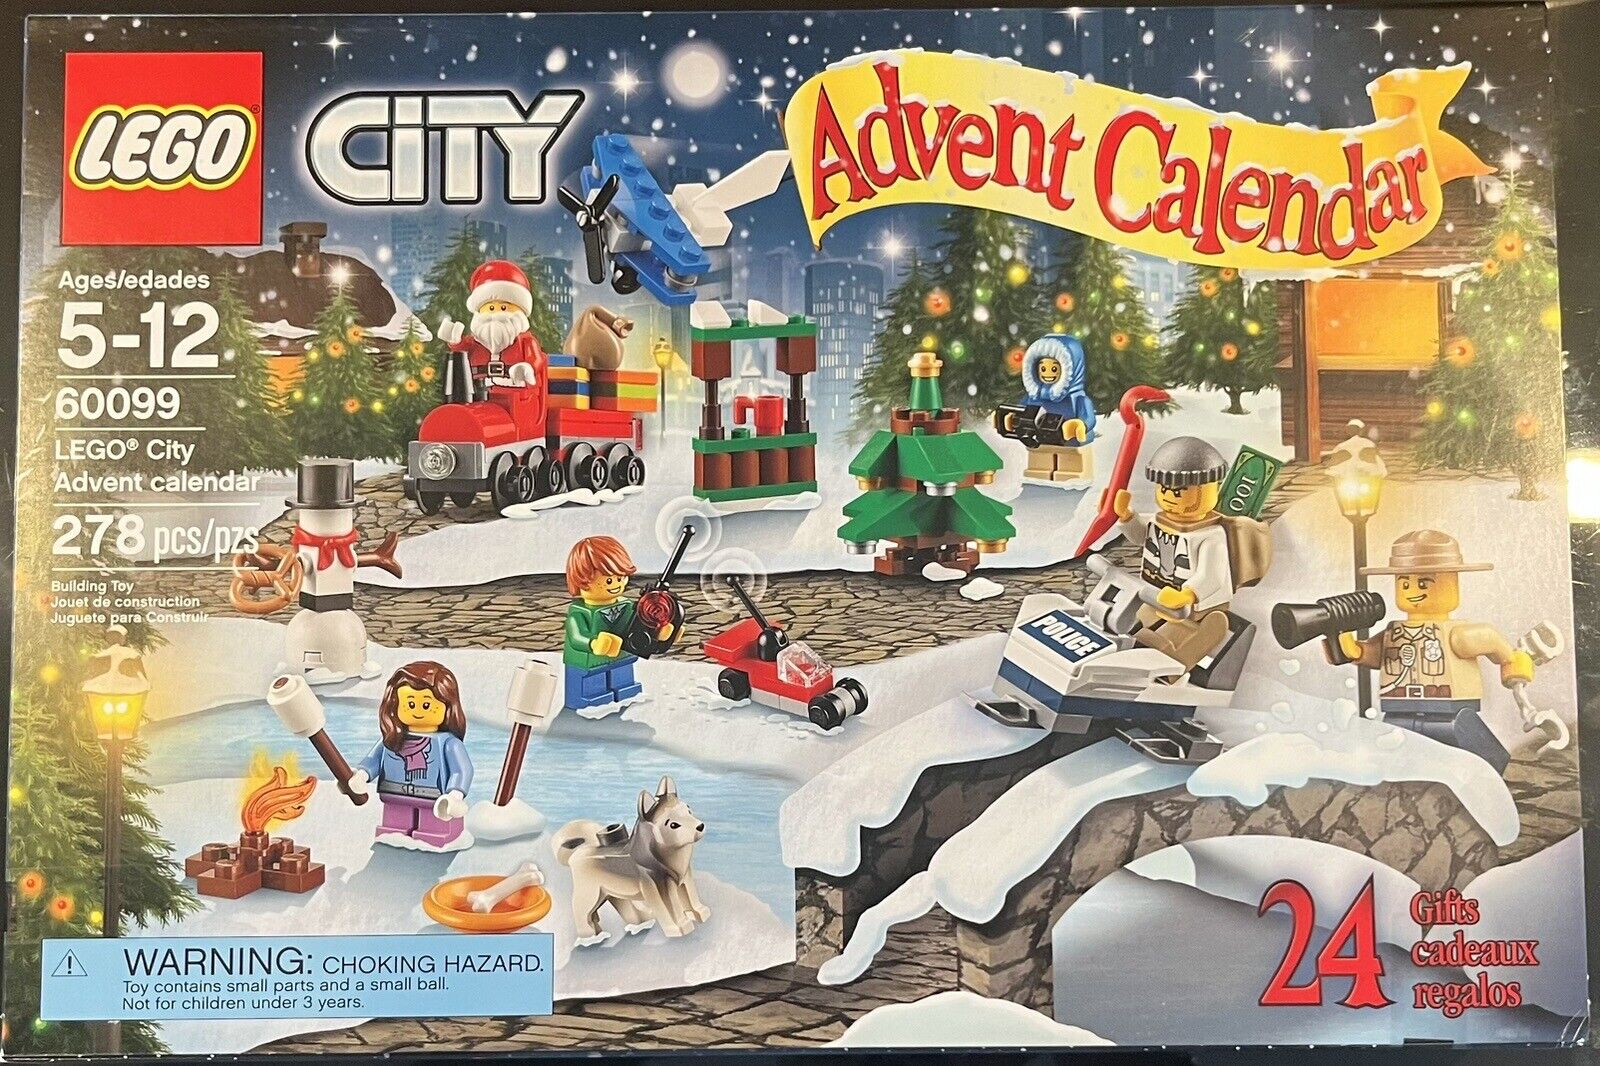 2015 Lego City Advent Calendar New NIB Sealed 60099 278 Pieces Christmas